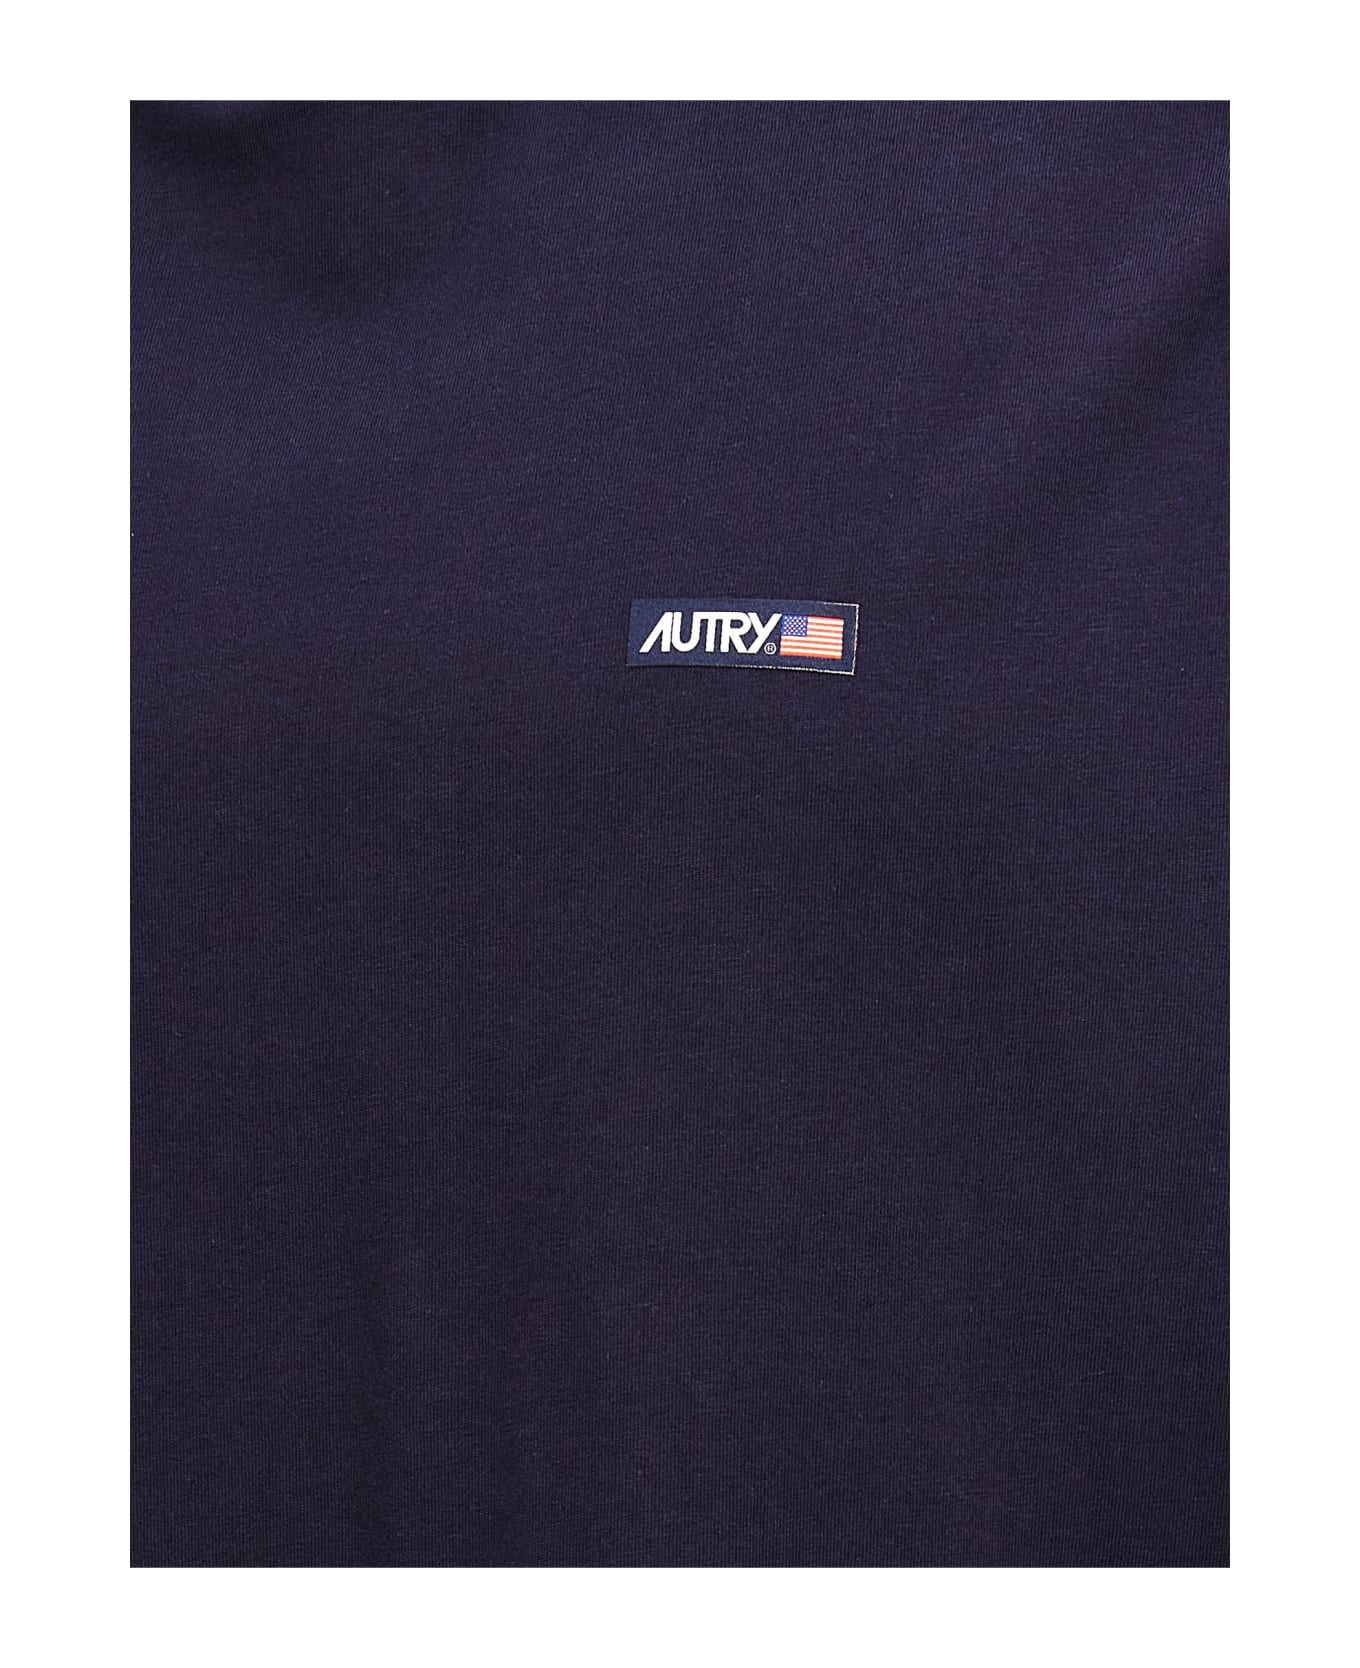 Autry Logo Patch T-shirt - Blue